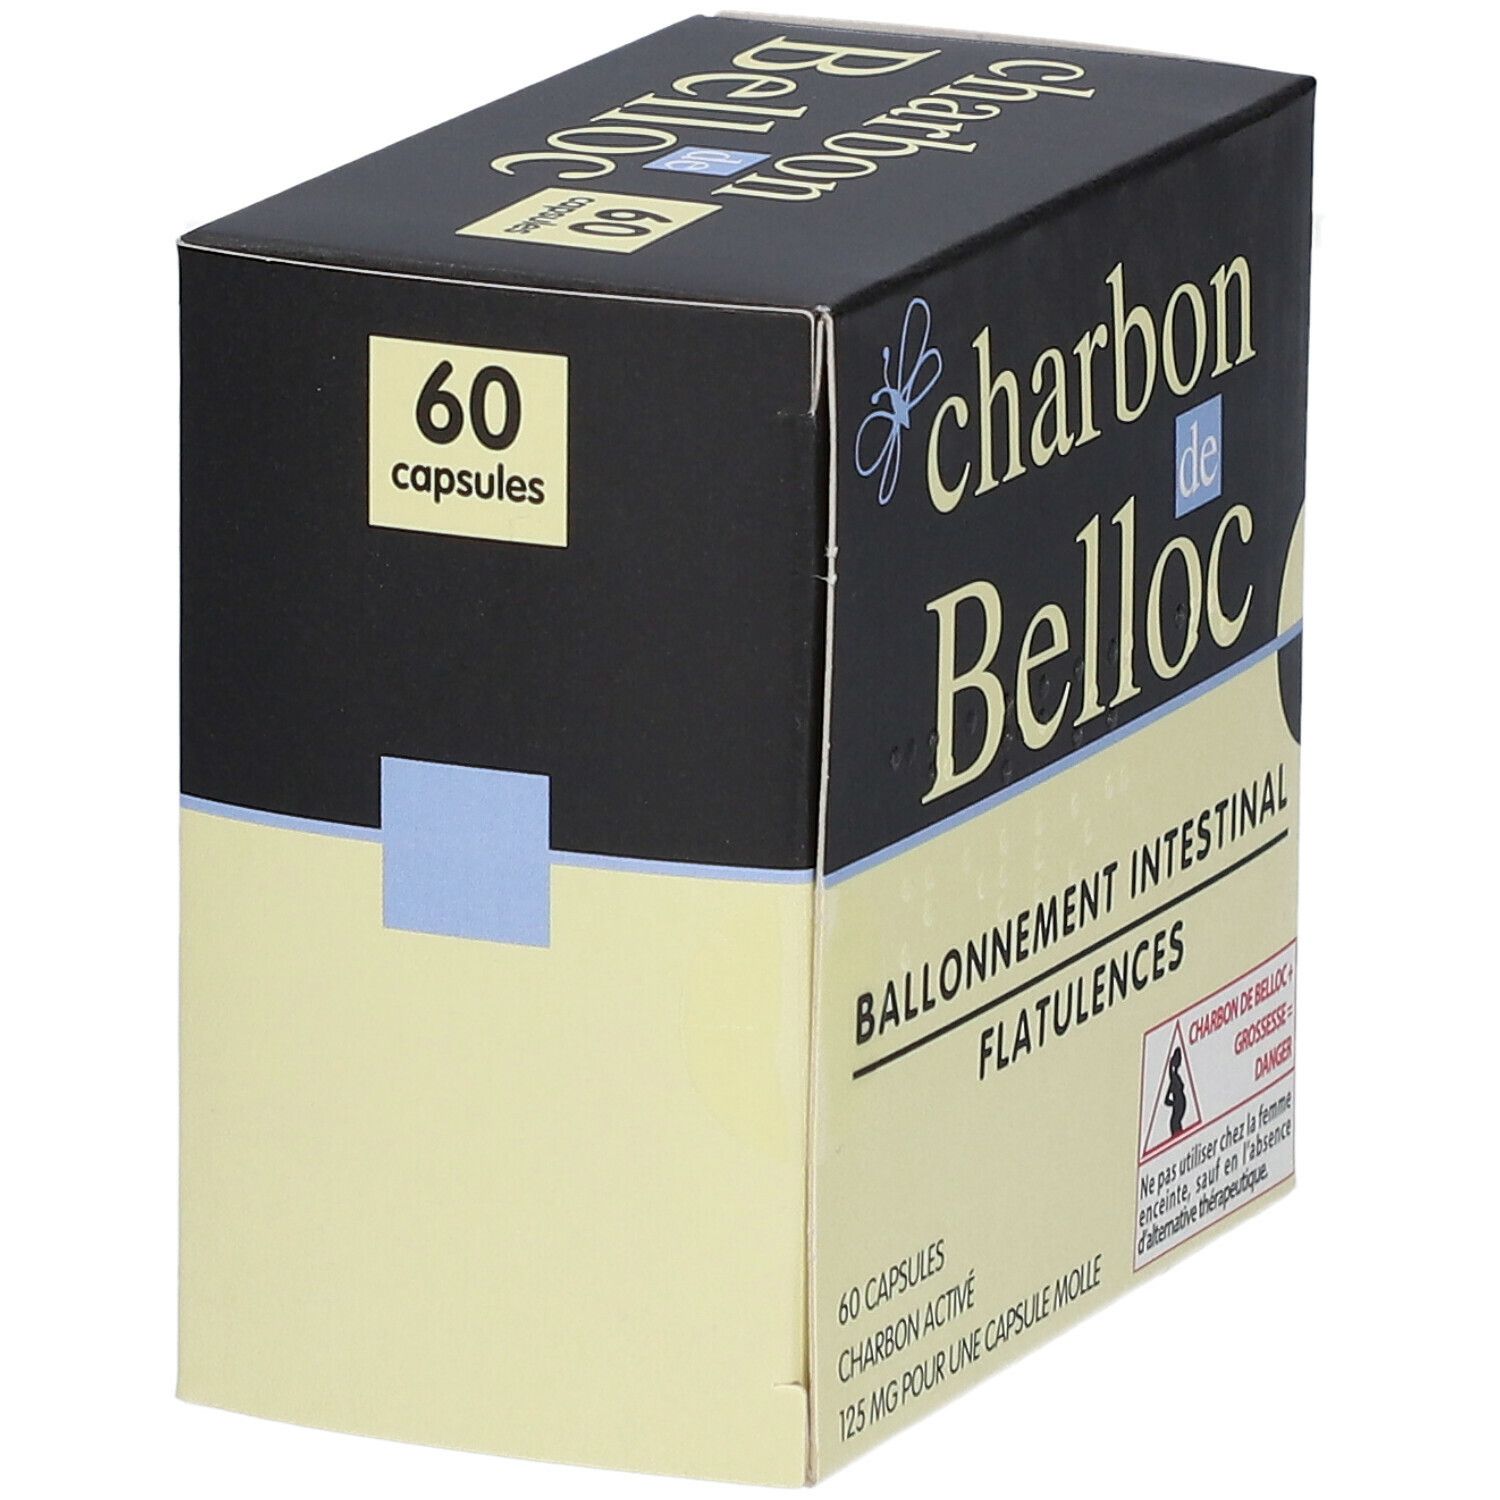 Charbon de Belloc - shop-pharmacie.fr